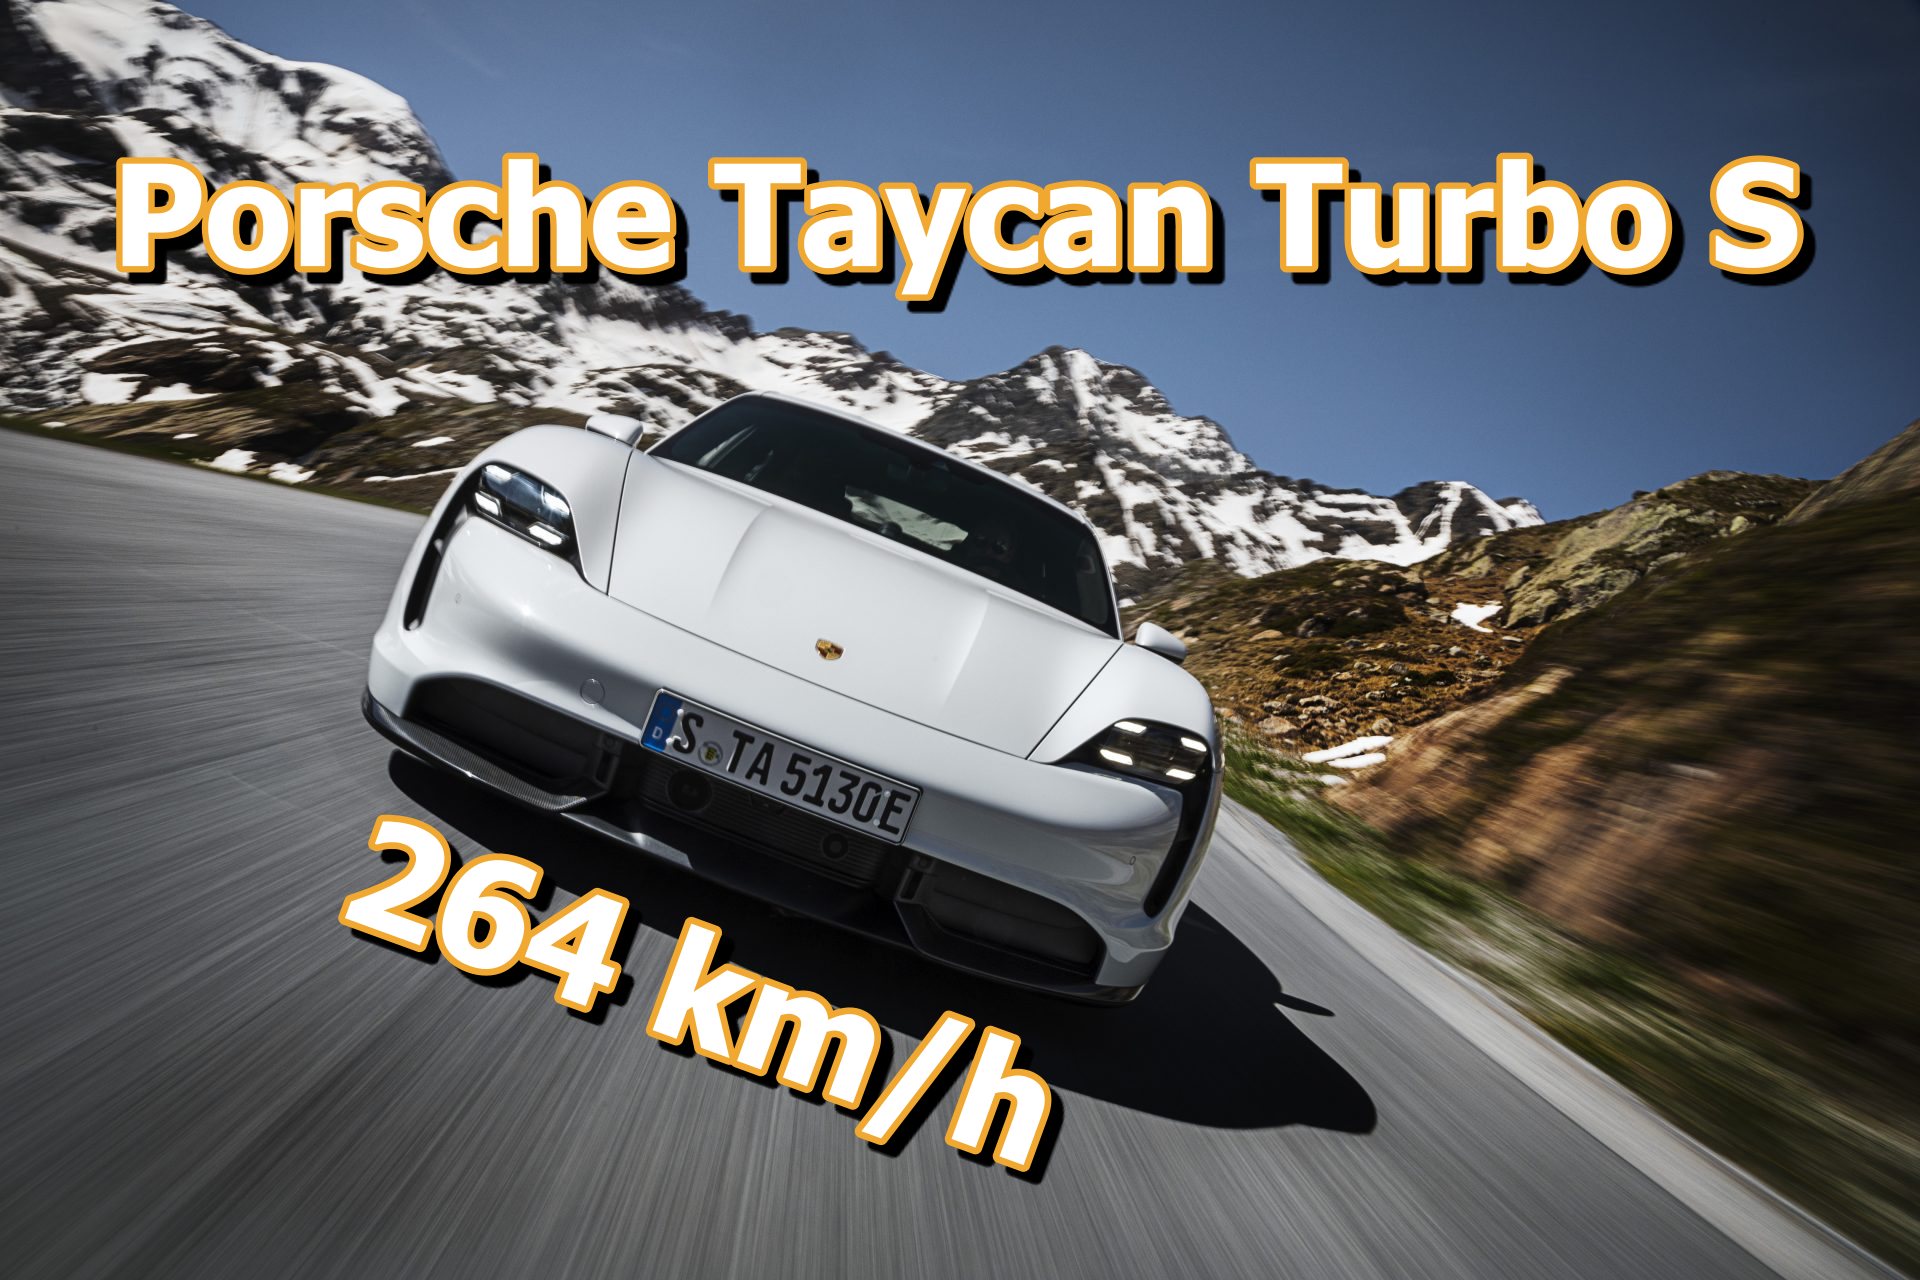 Porsche-Taycan-Turbo-S.jpg